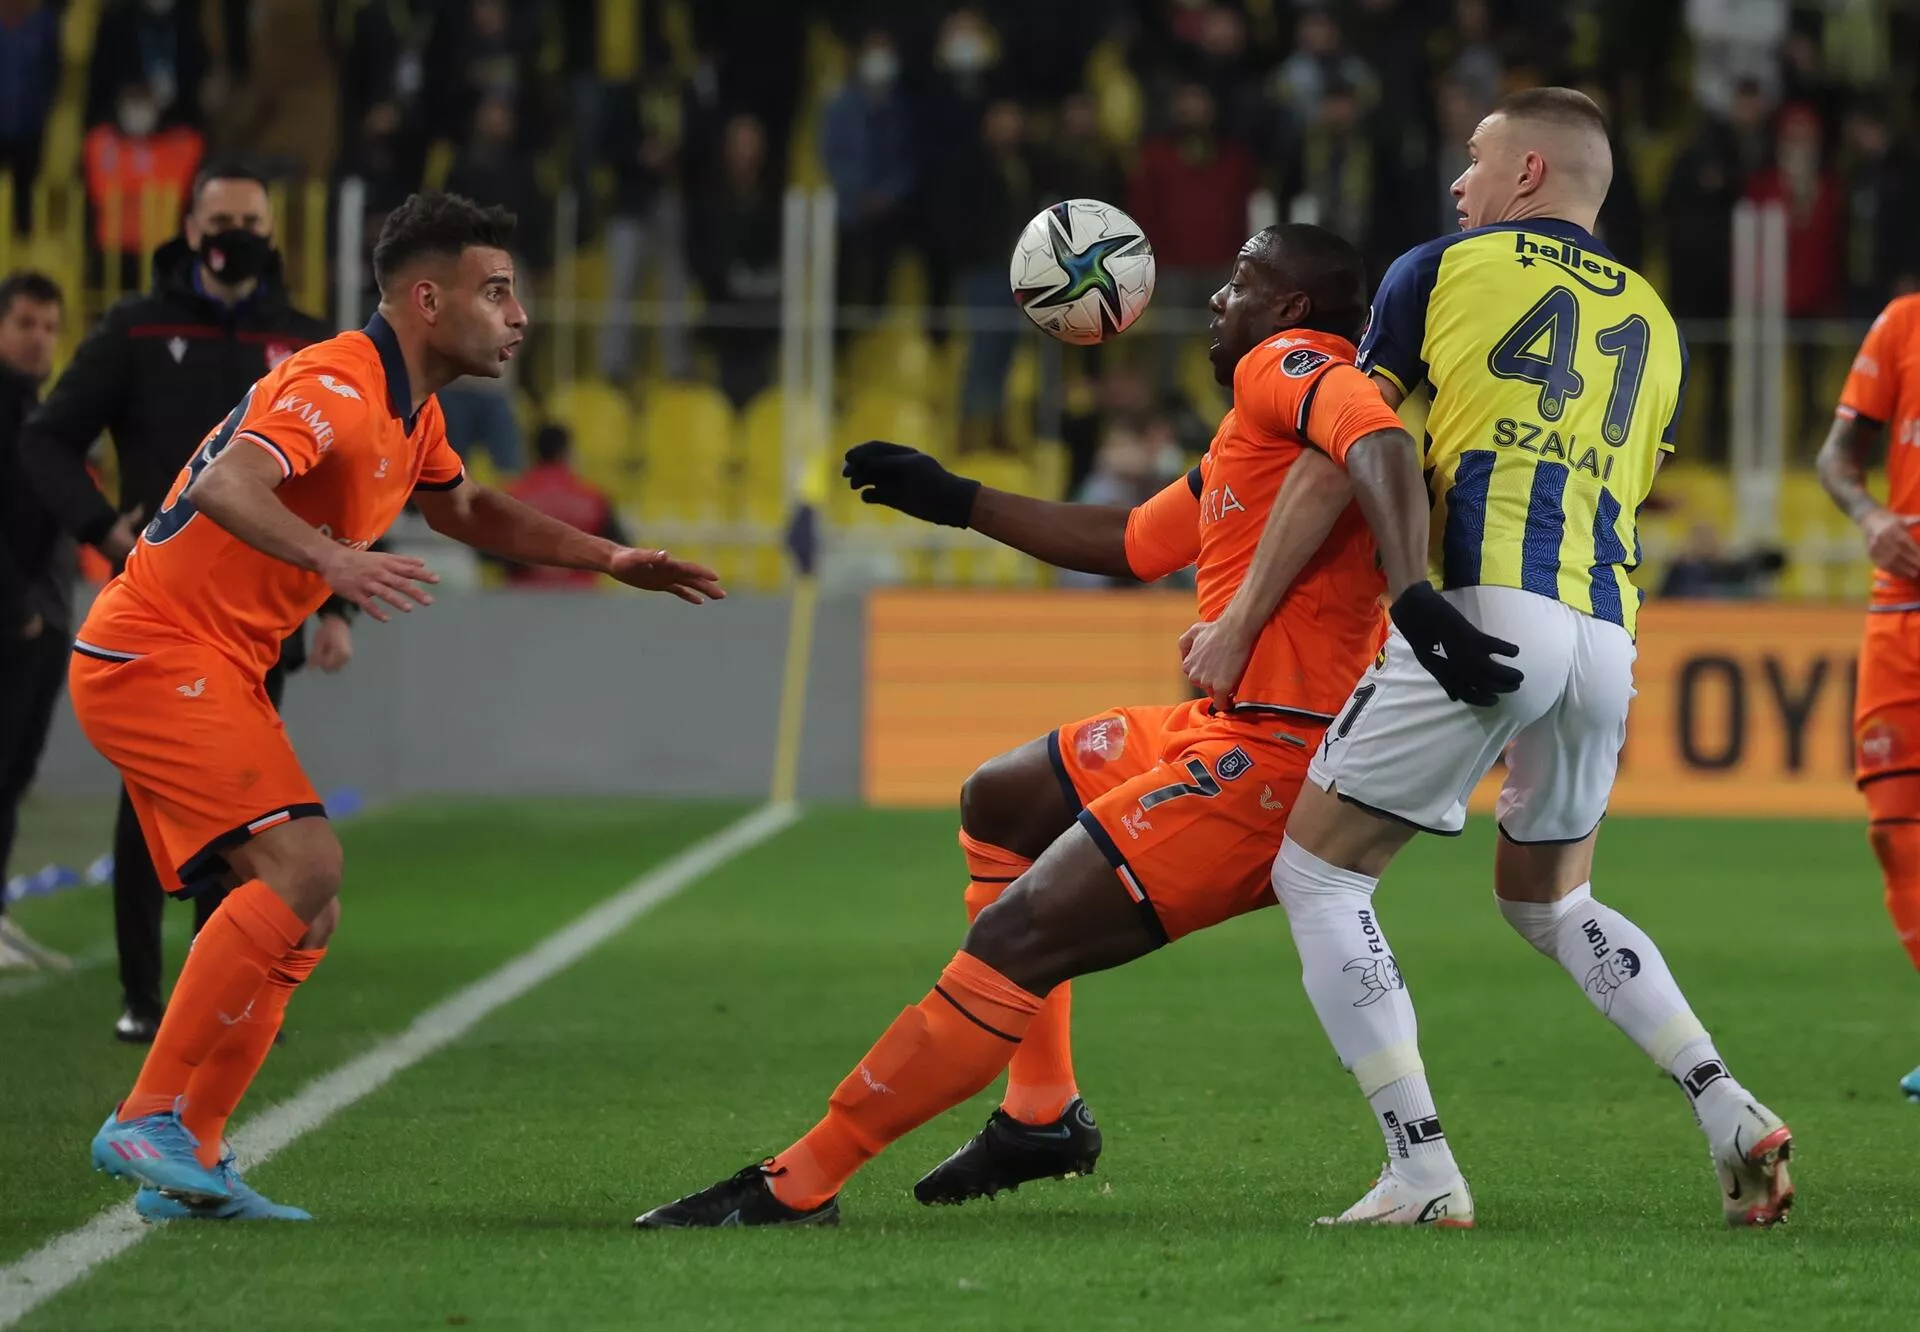 Fenerbahçe'ye sakatlık şoku! Yıldız oyuncunun omzunda kırık tespit edildi